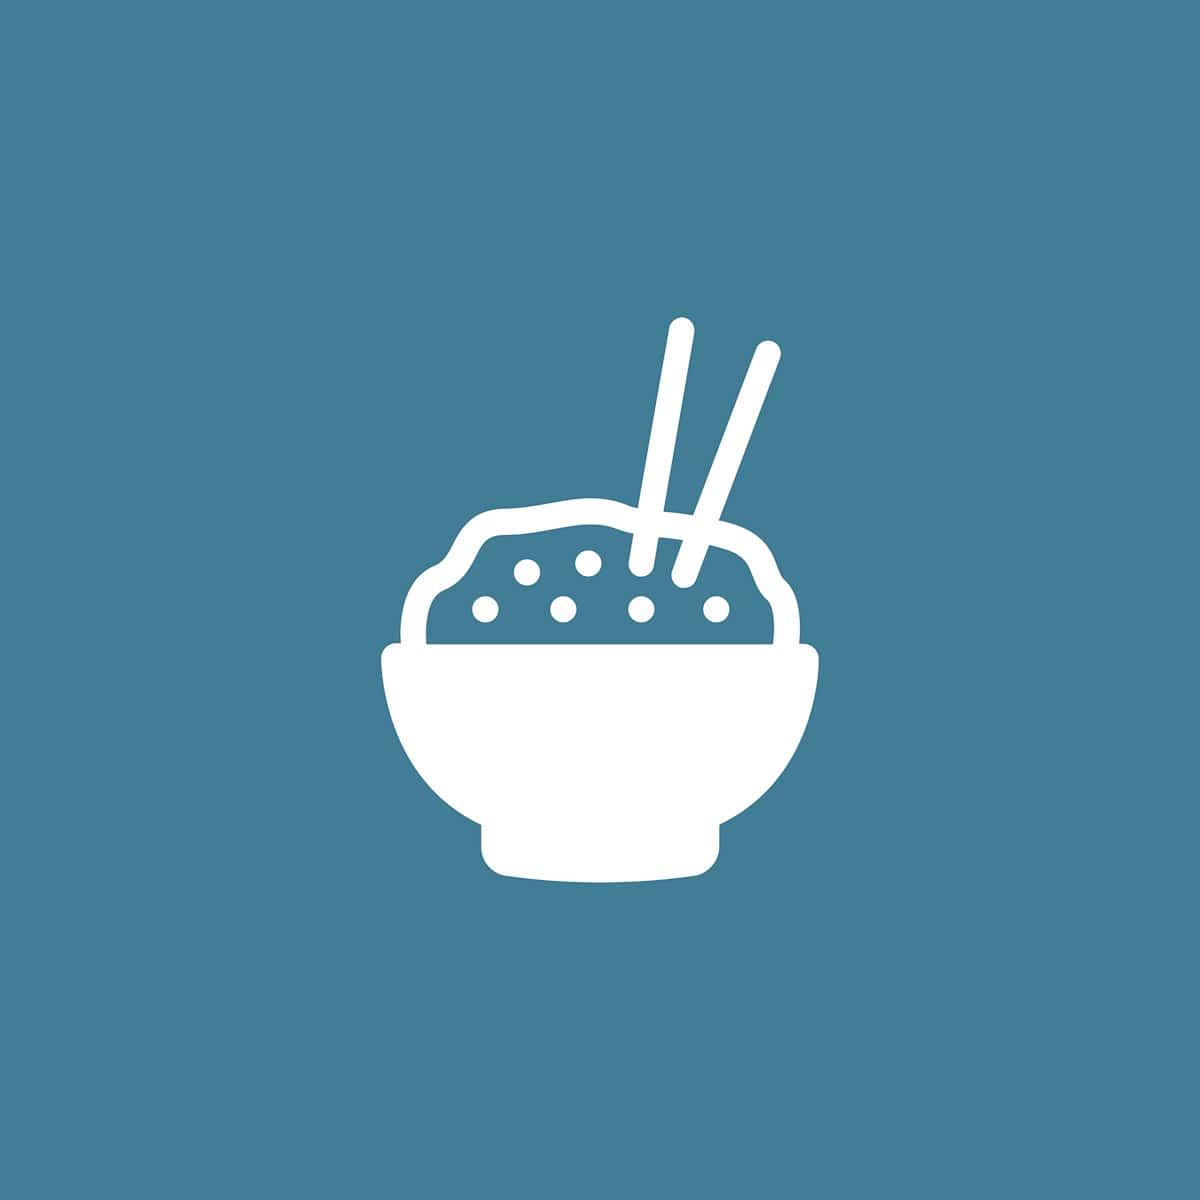 Een tekening van een kom met eten met twee chopsticks op een blauwe ondergrond